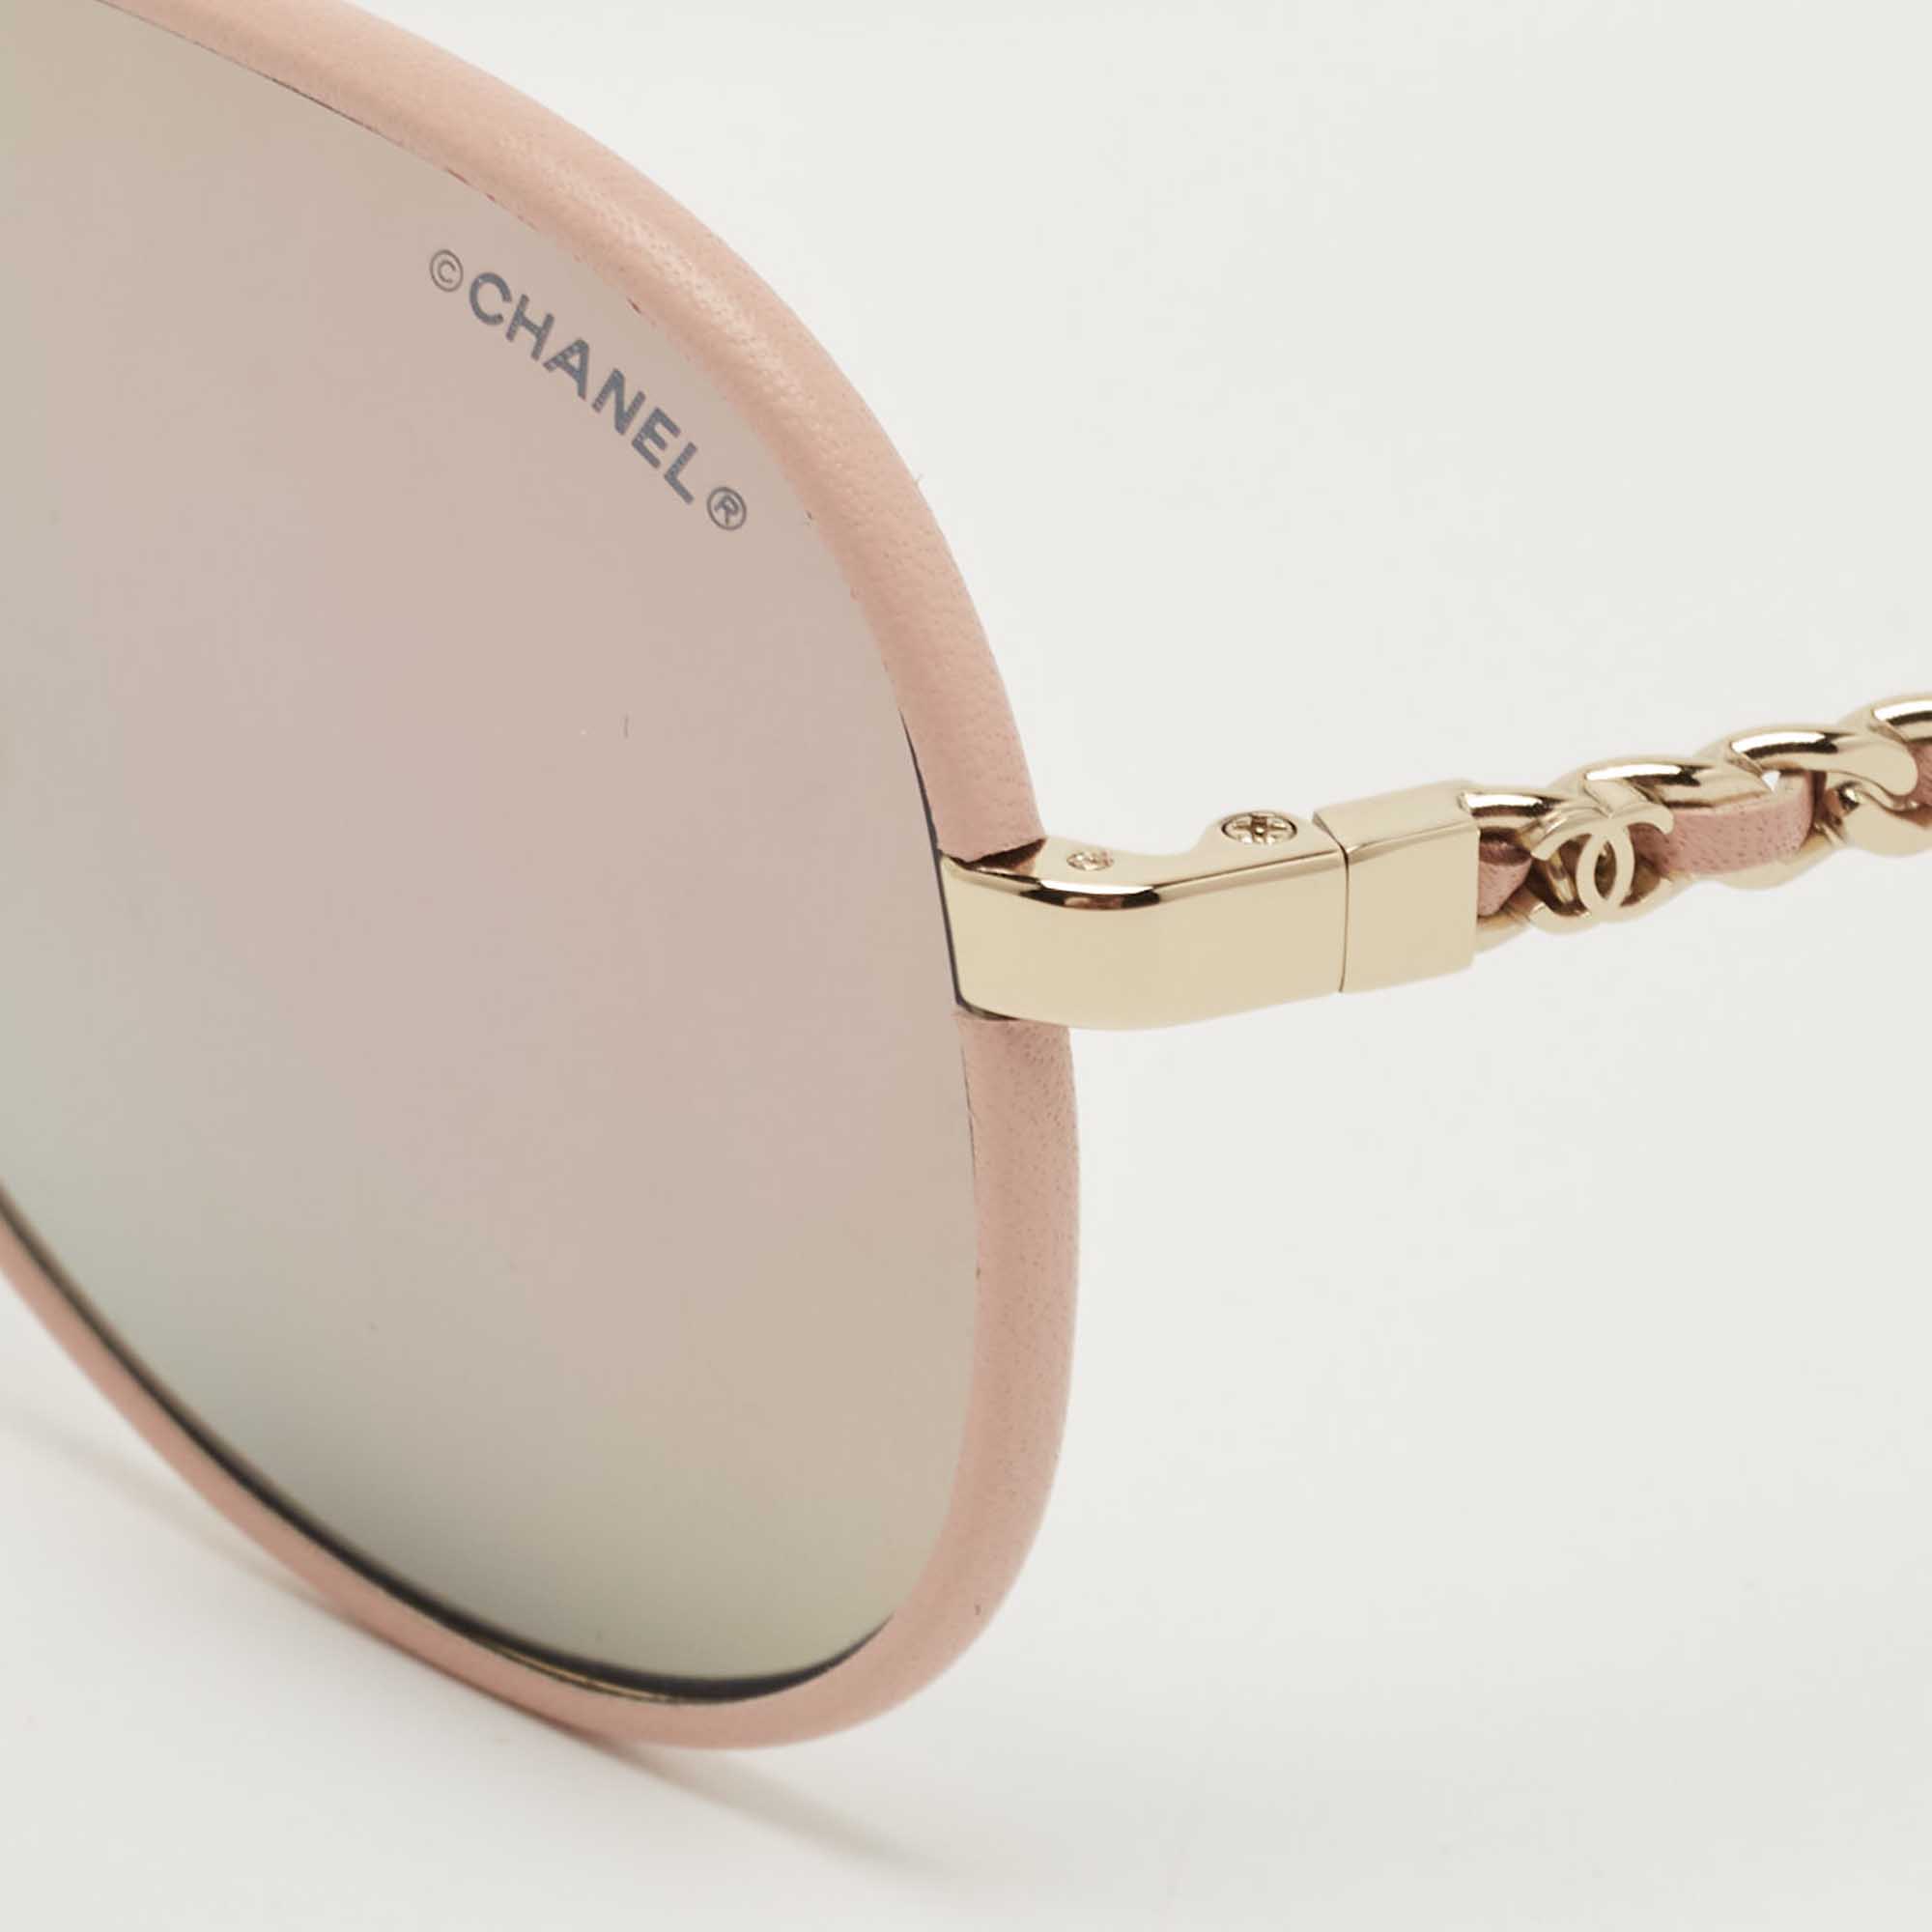 Chanel 4189TQ C117/13 Sunglasses - US